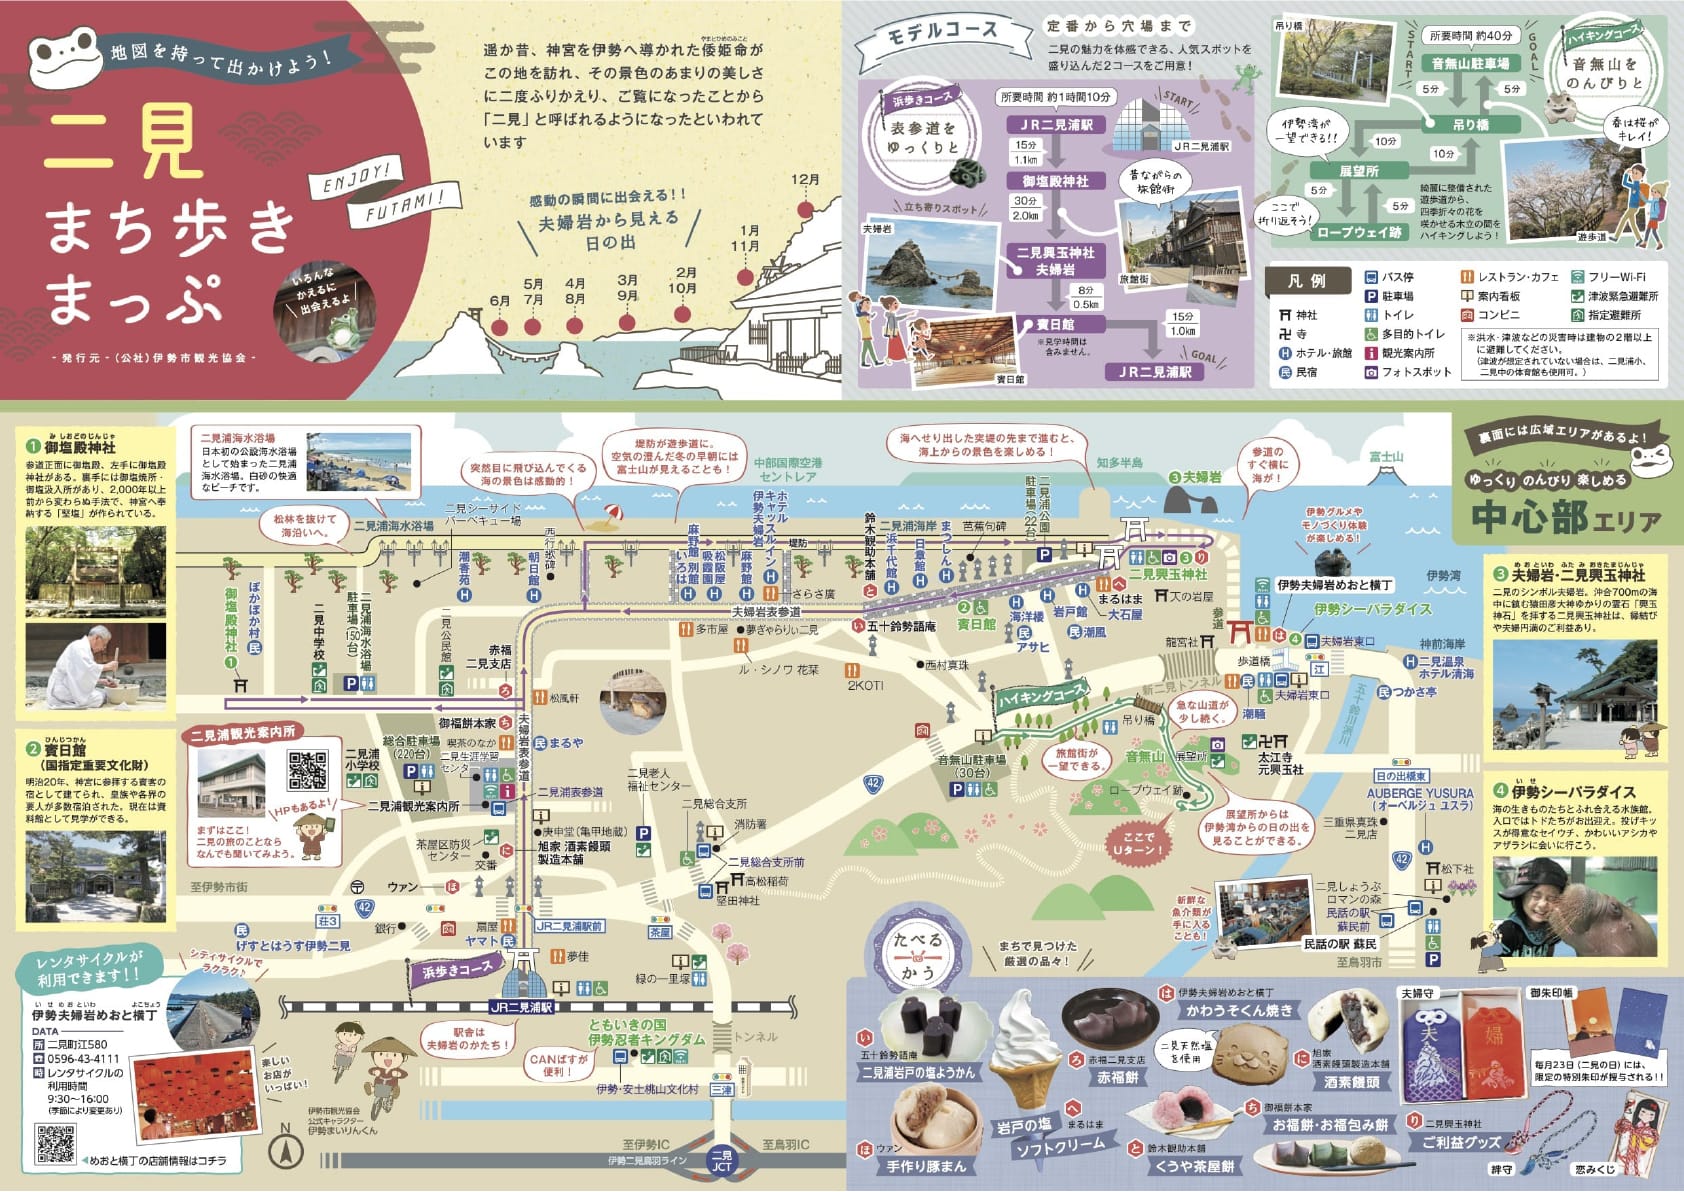 แผนที่ Futami Town Aruki